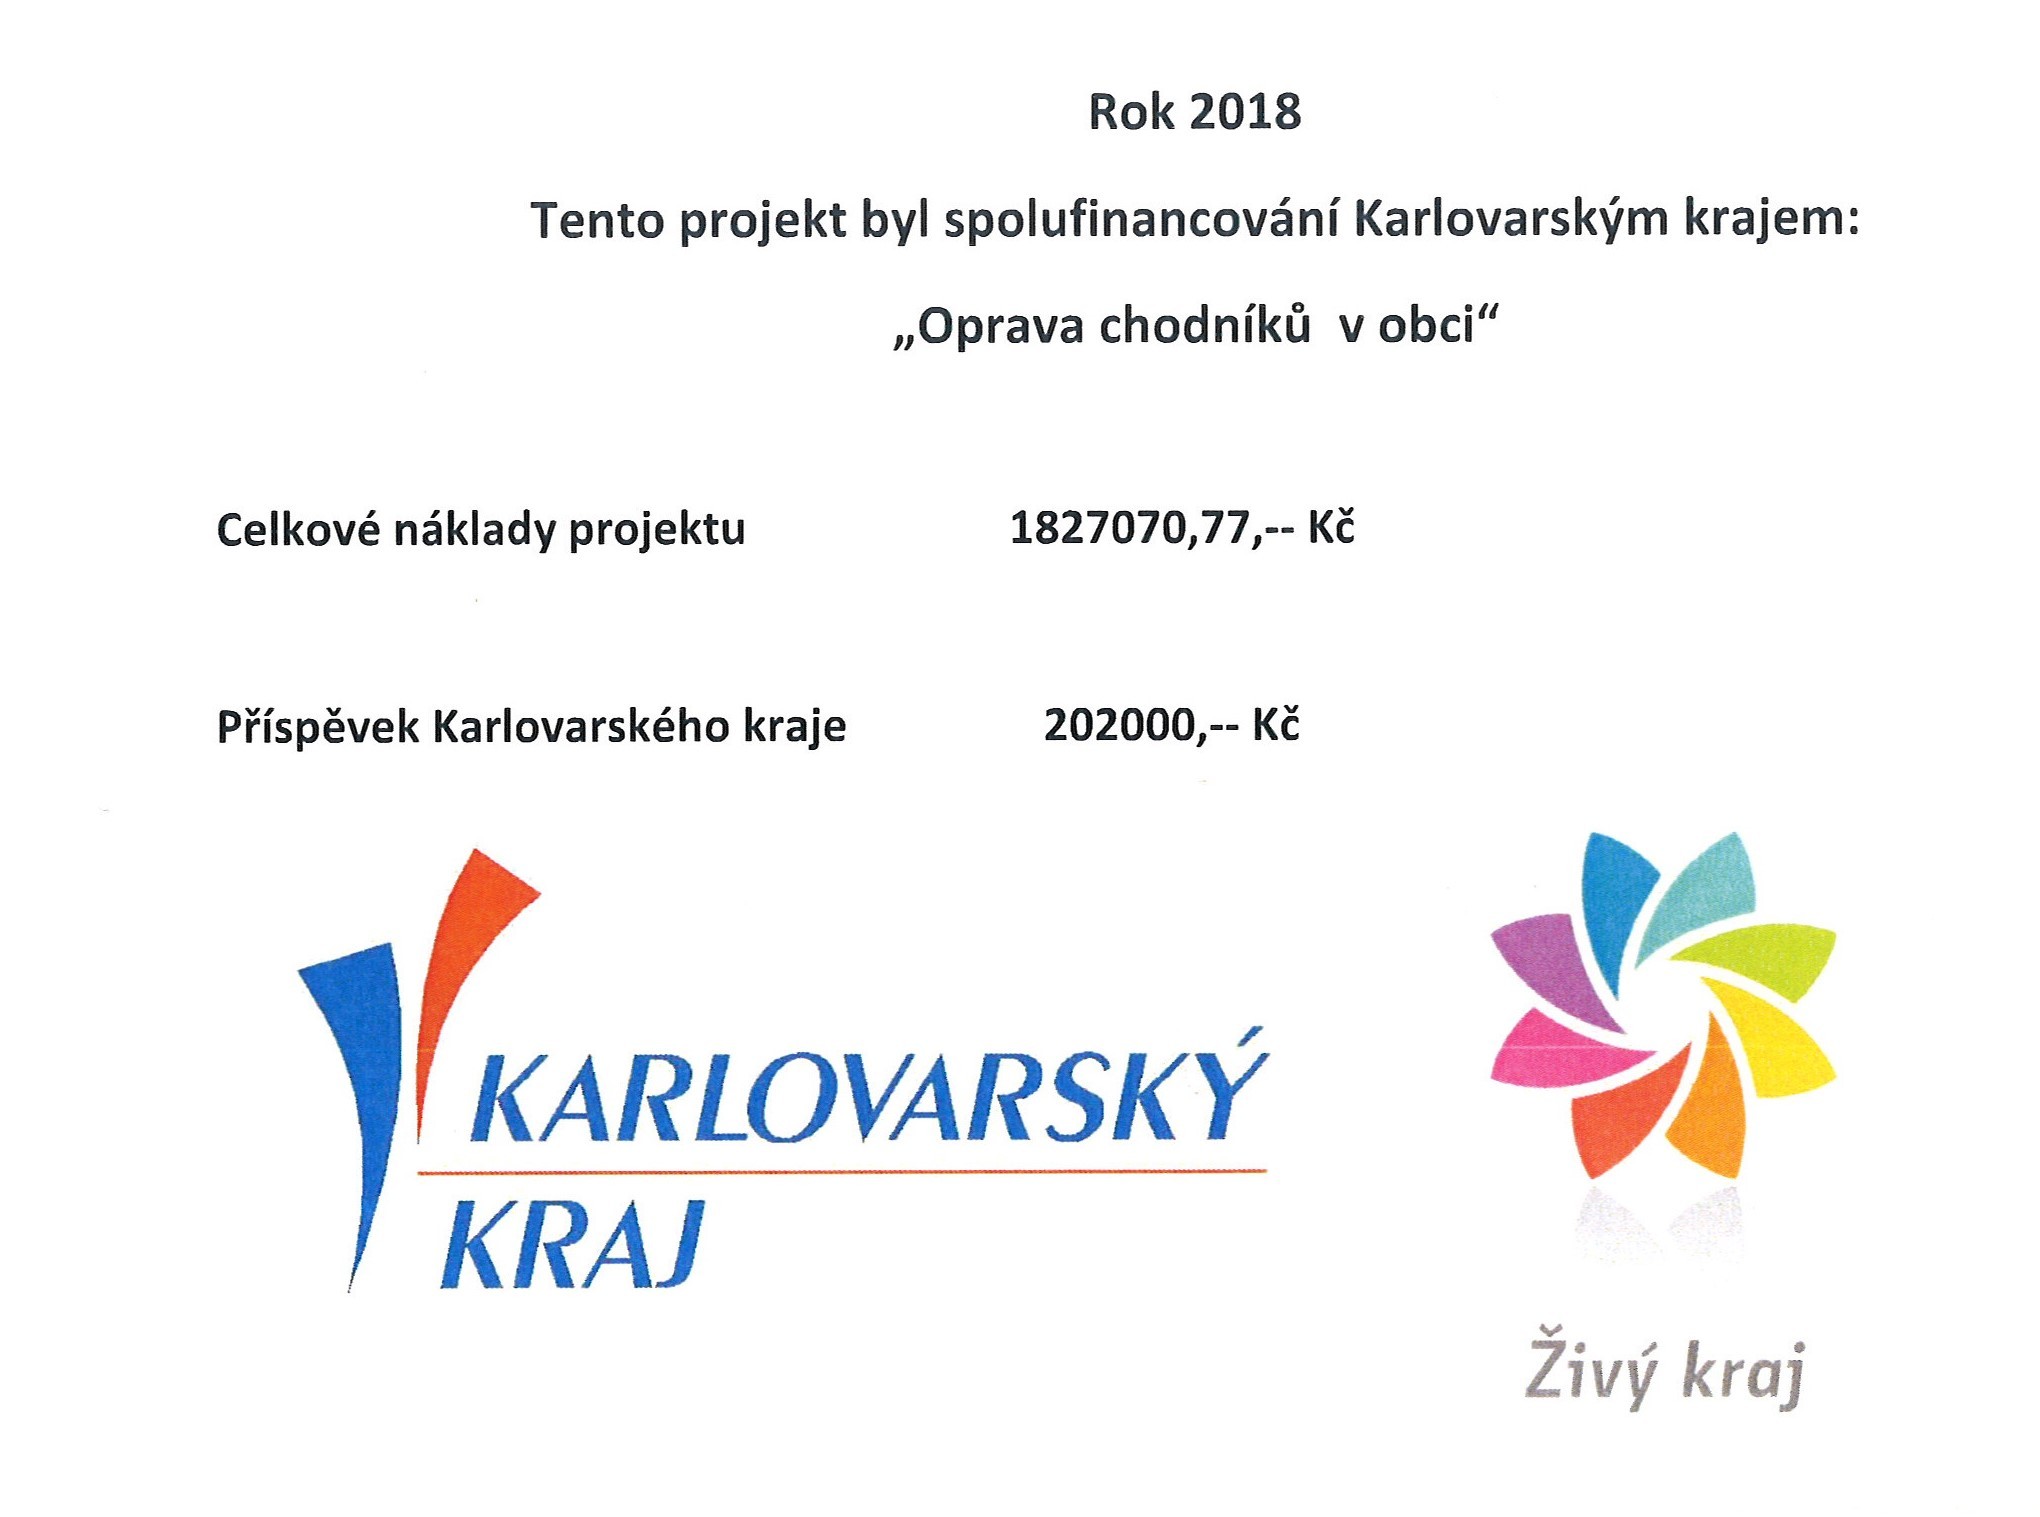 Projekty a akce realizované s podporou Karlovarského kraje